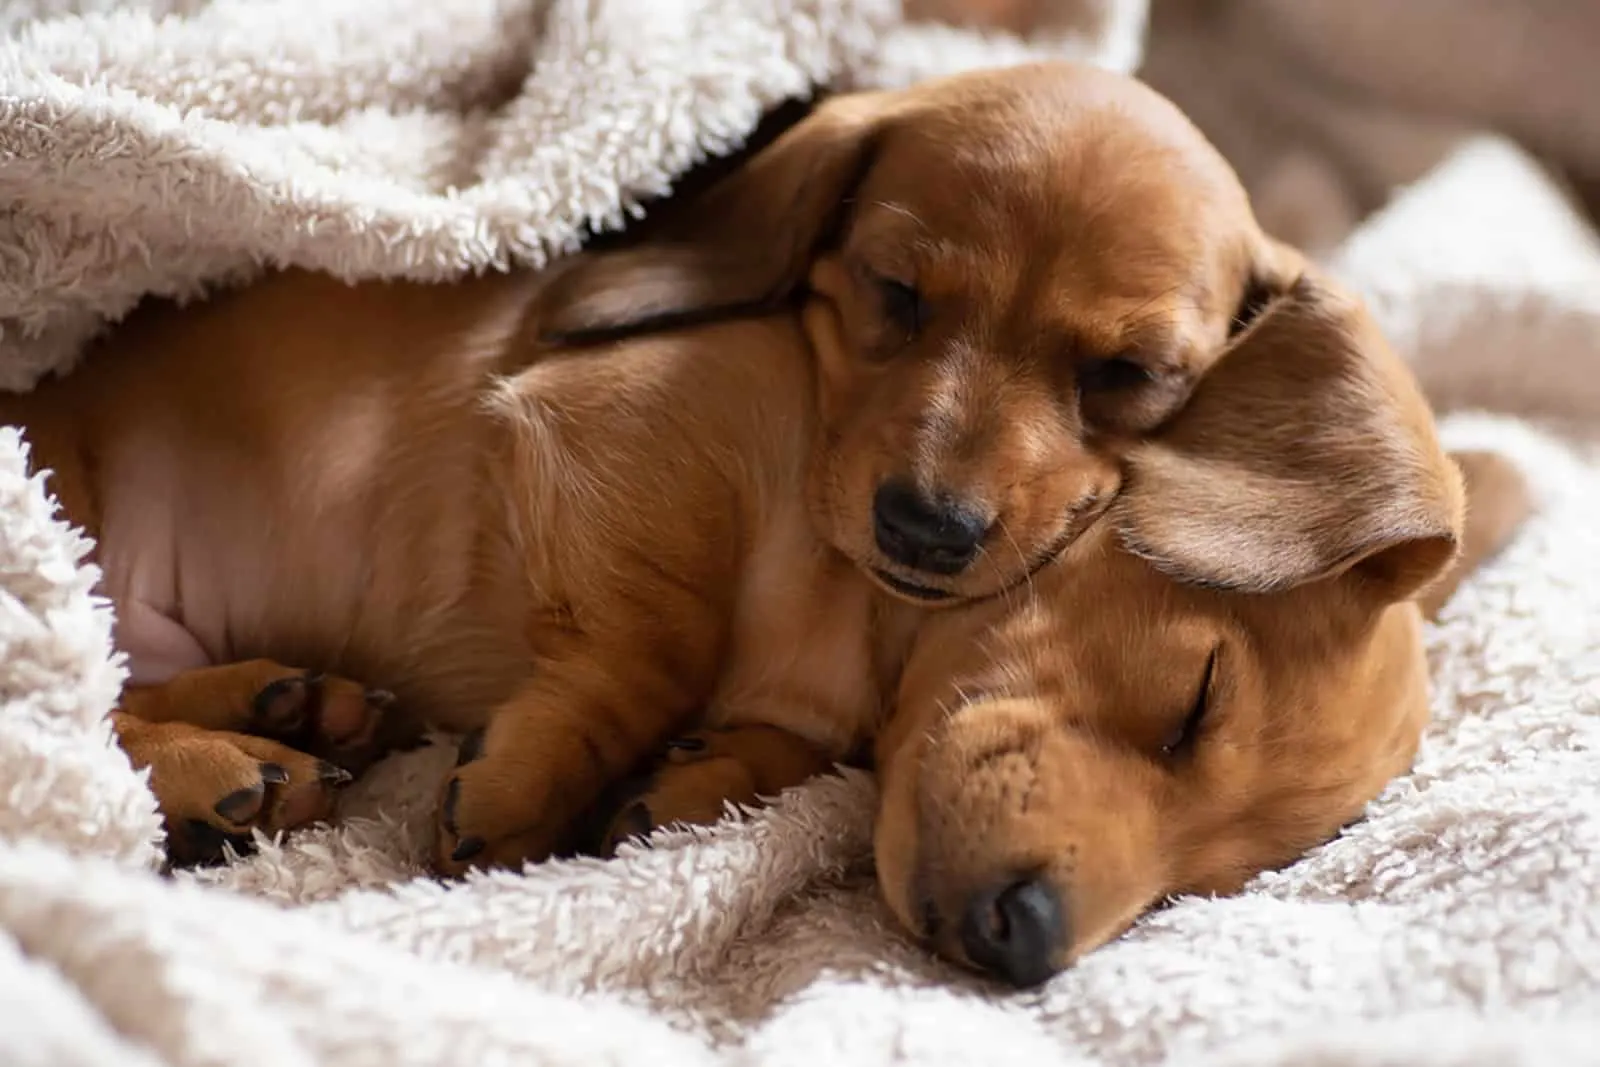 sleeping dachshund puppies in white blanket